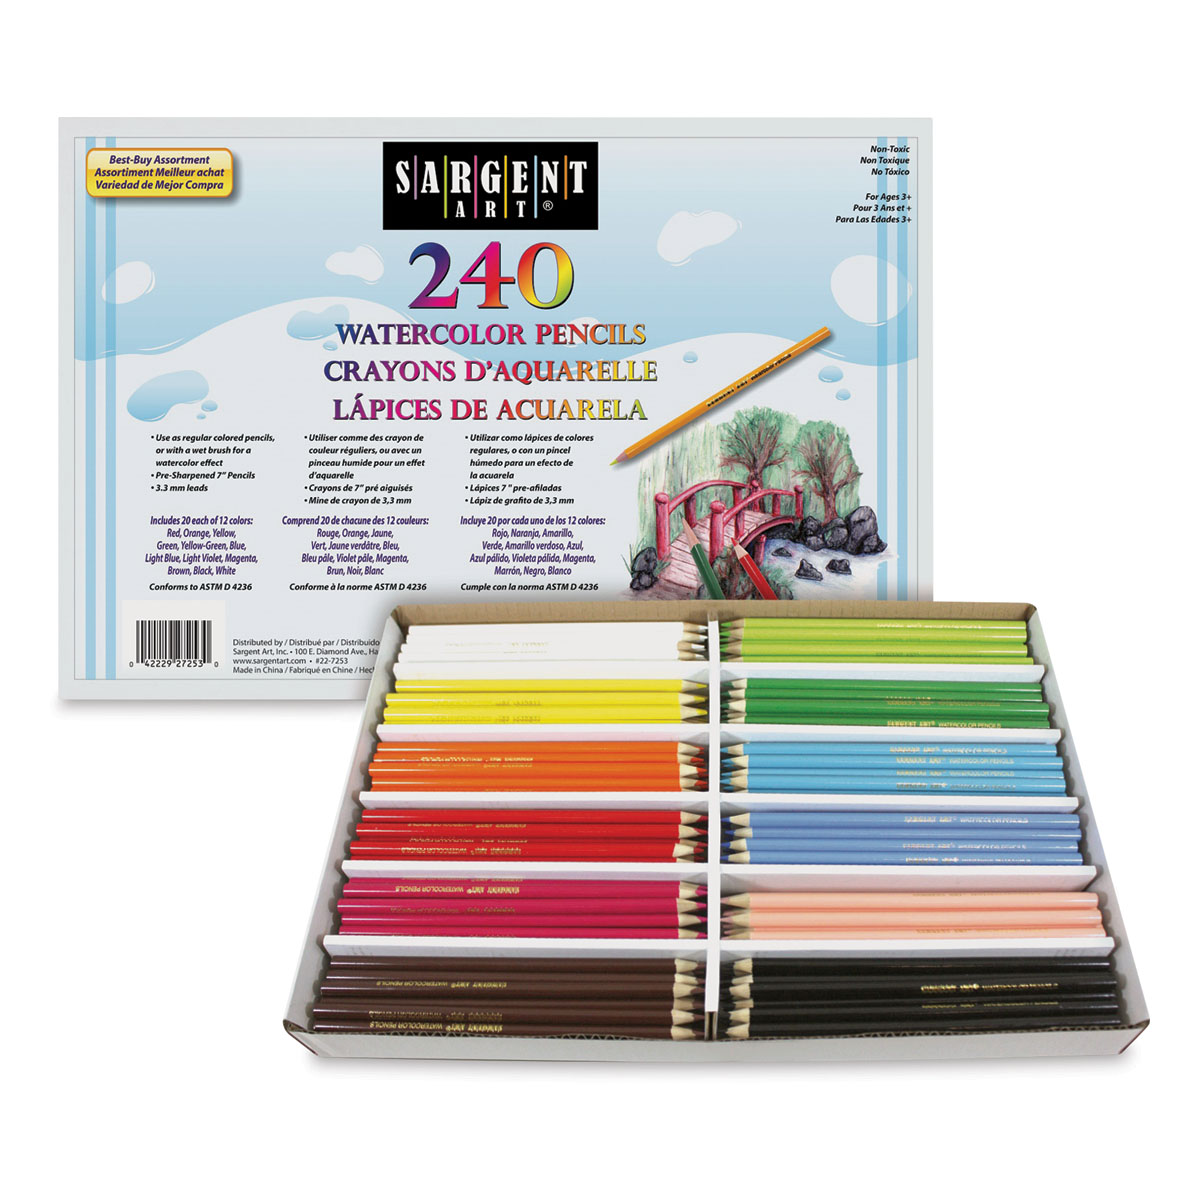 Sargent Watercolor Pencils | Blick Art Materials